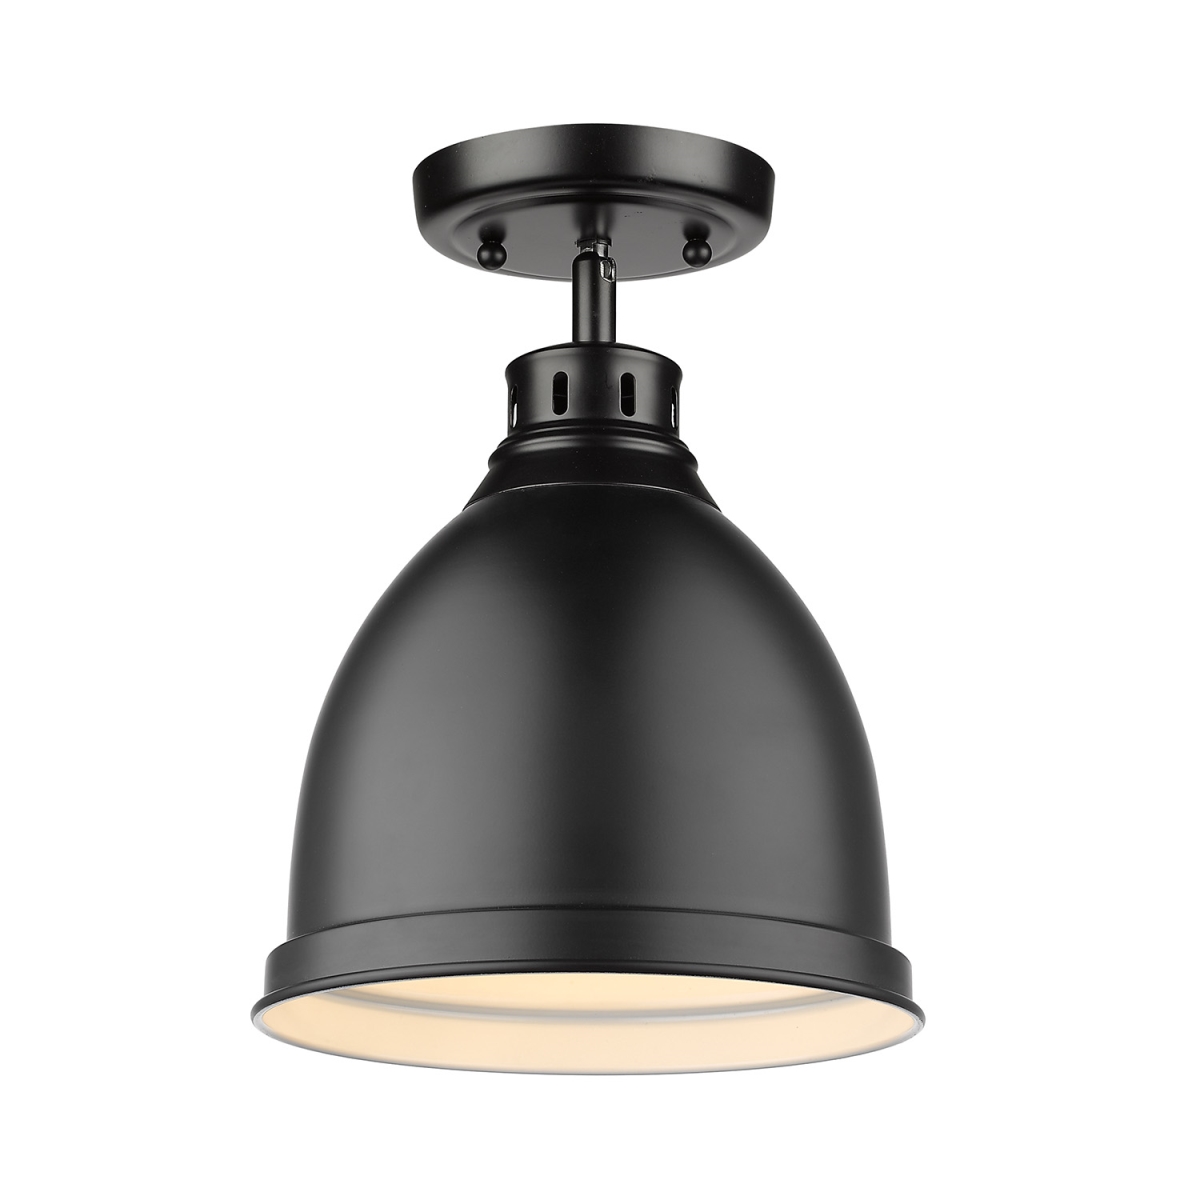 3602-fm Blk-blk Duncan Flush Mount Light With Matte Black Shade, Black